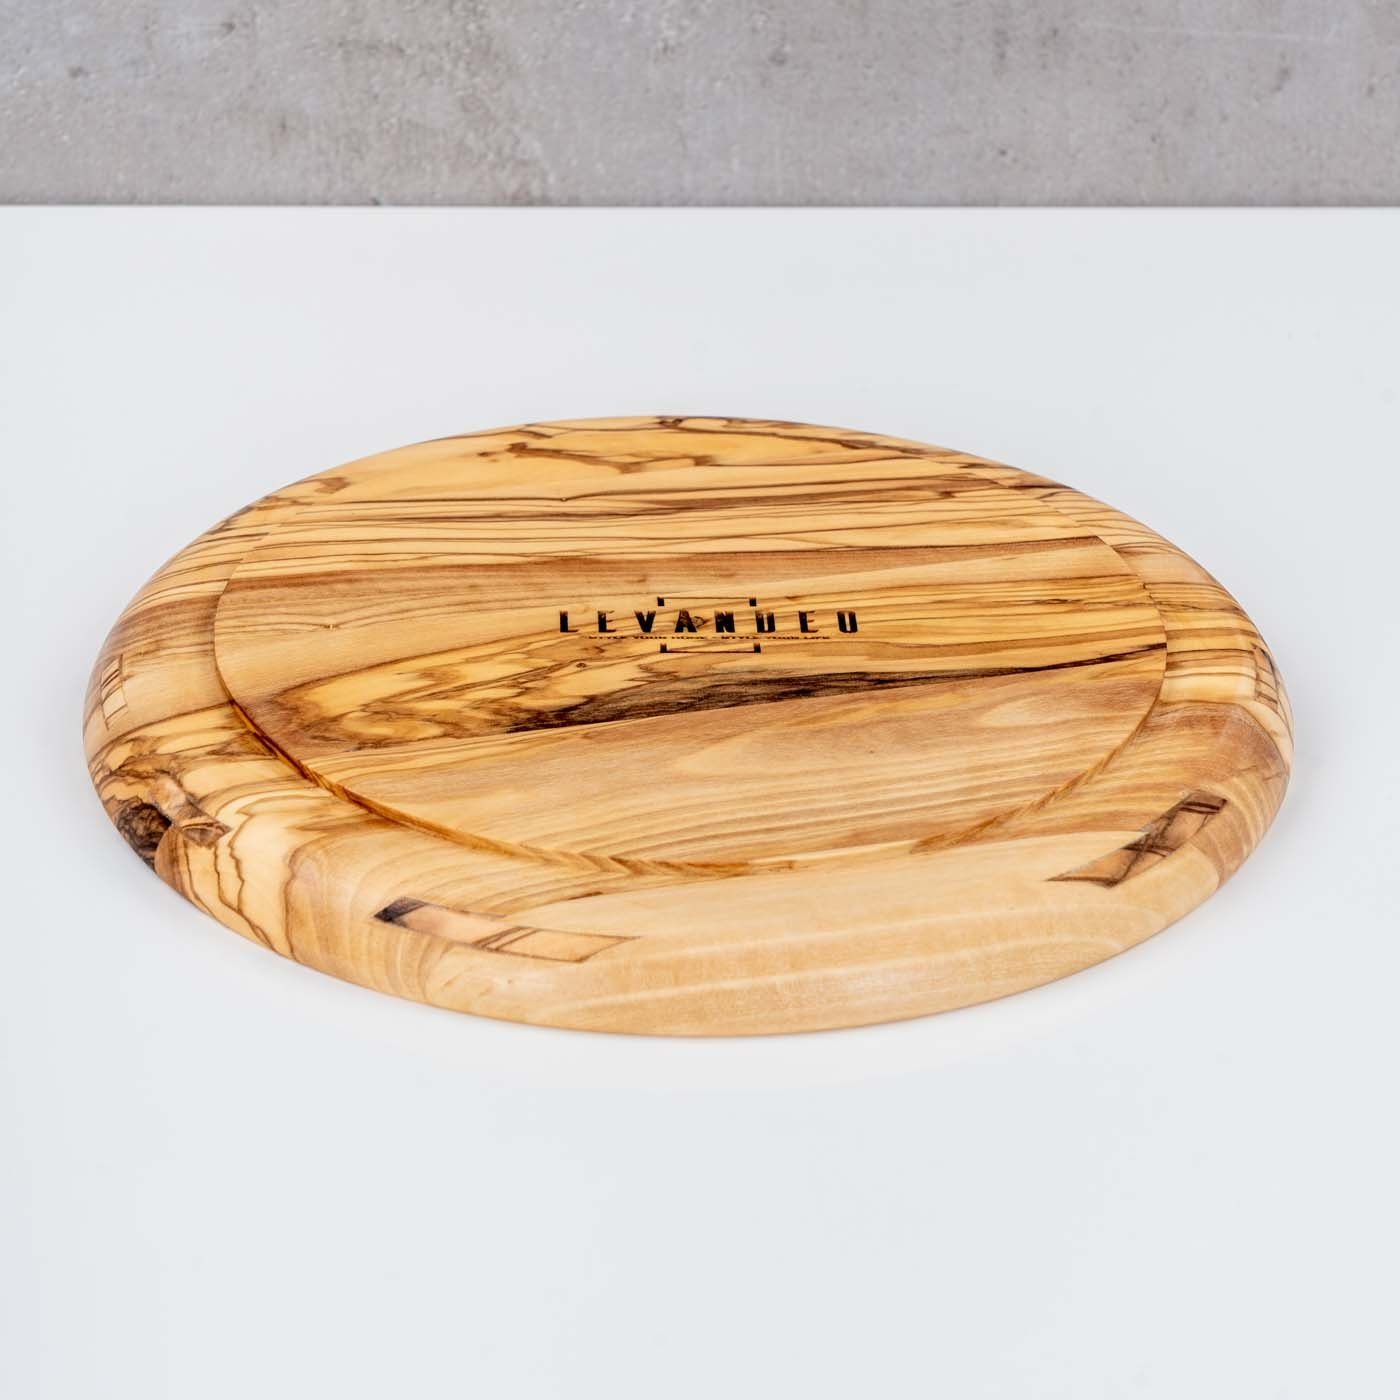 Teller Olivenholz Levandeo® 20x20cm Küche Dekoteller, Natur Unikat Holzteller Holz Runder